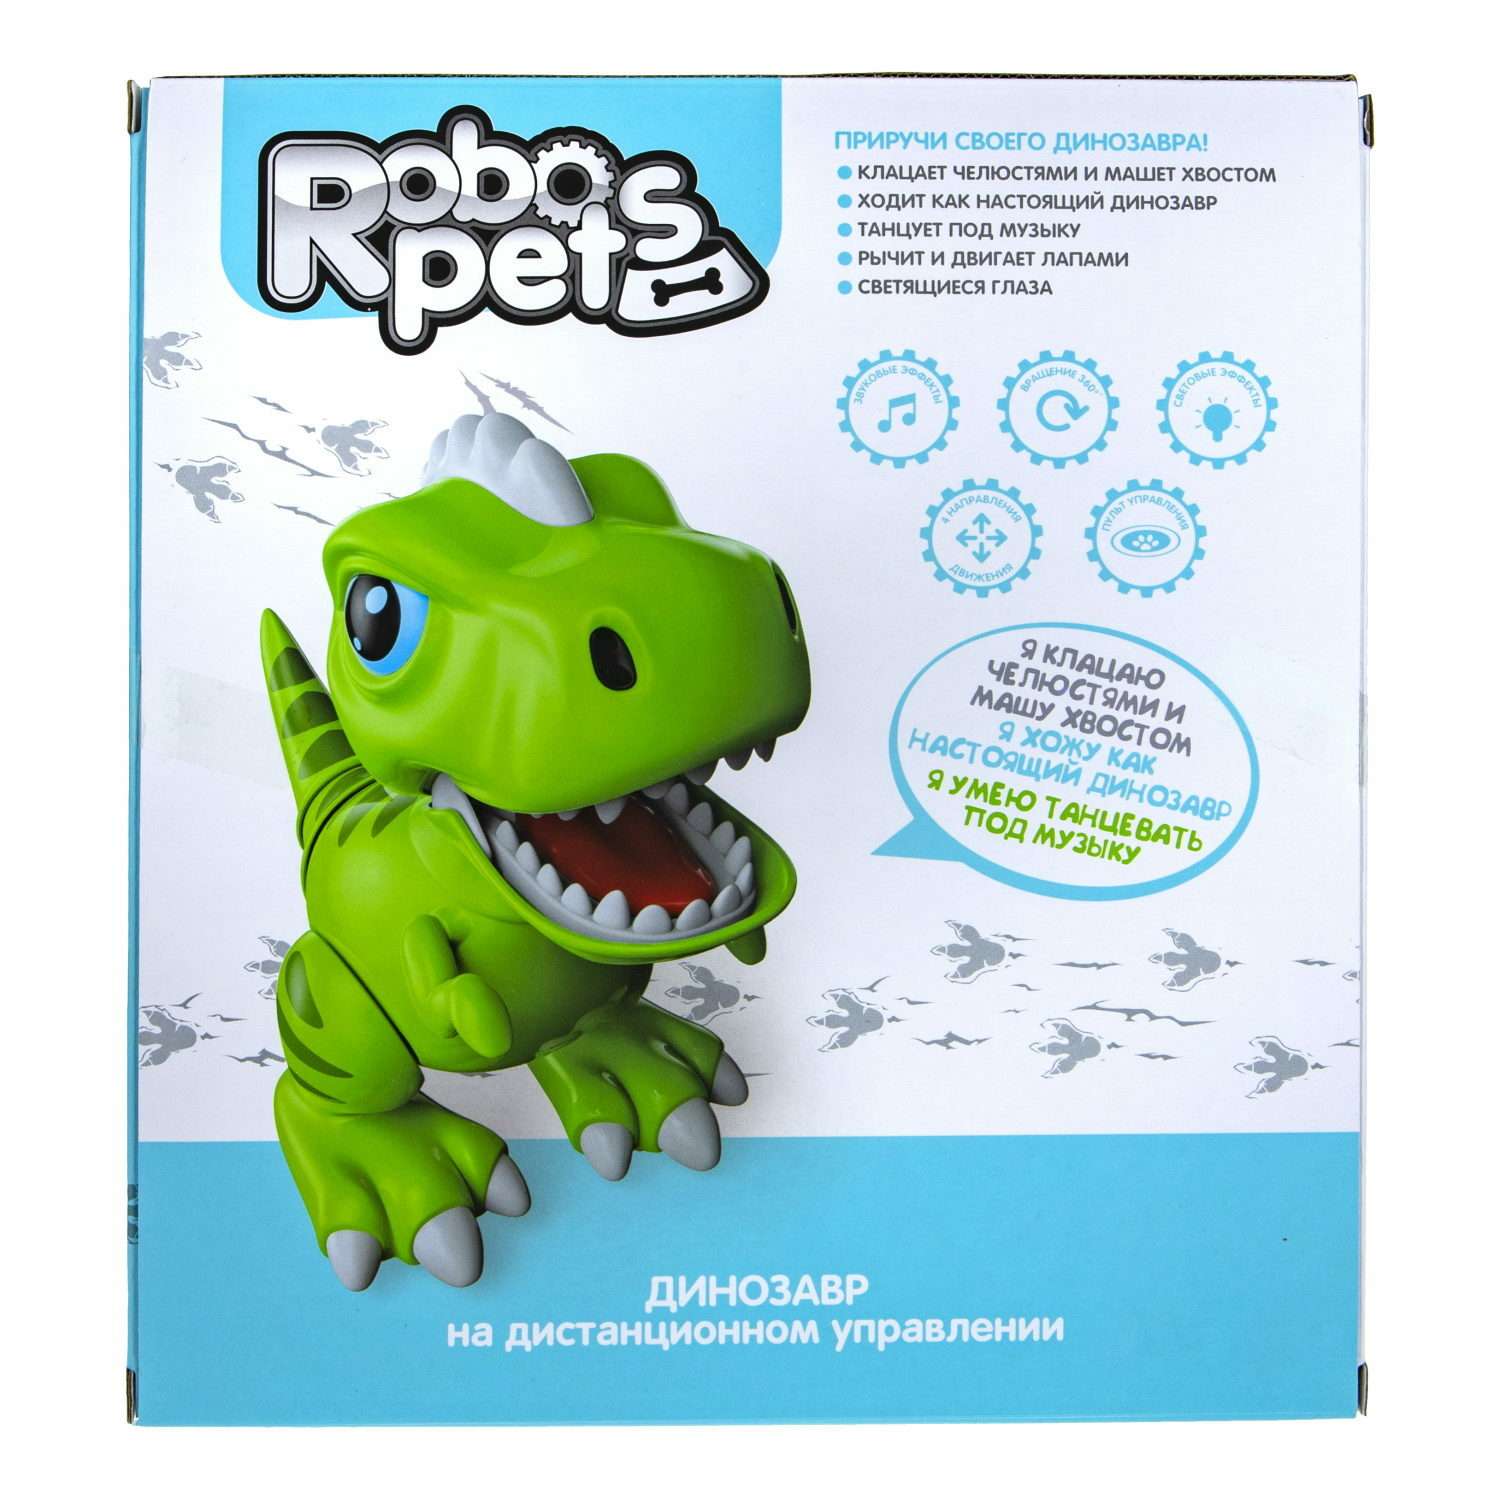 Интерактивная игрушка Robo Pets Динозавр Т-РЕКС зеленый на РУ со световыми звуковыми и эффектами движения - фото 11